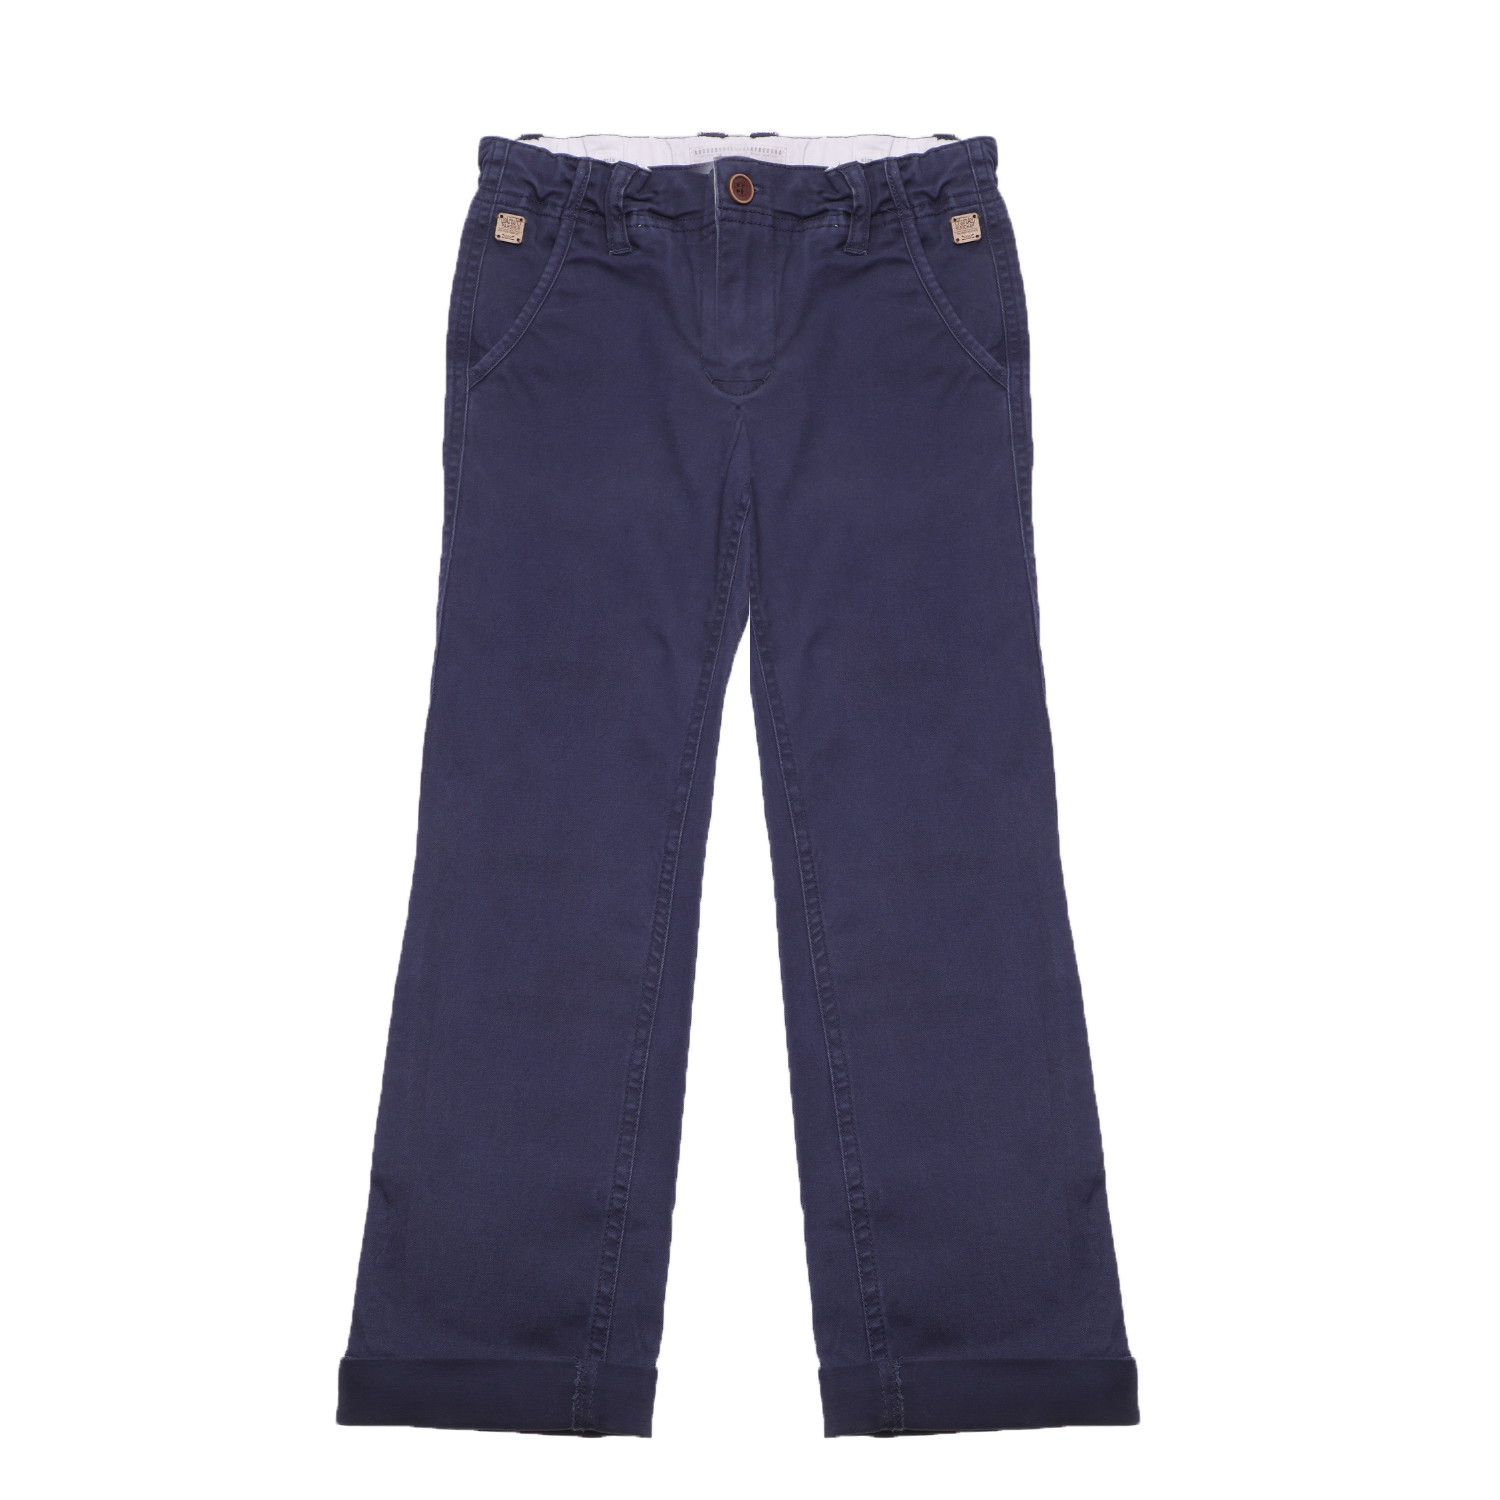 FUNKY BUDDHA - Αγορίστικο παντελόνι FUNKY BUDDHA μπλε Παιδικά/Boys/Ρούχα/Παντελόνια